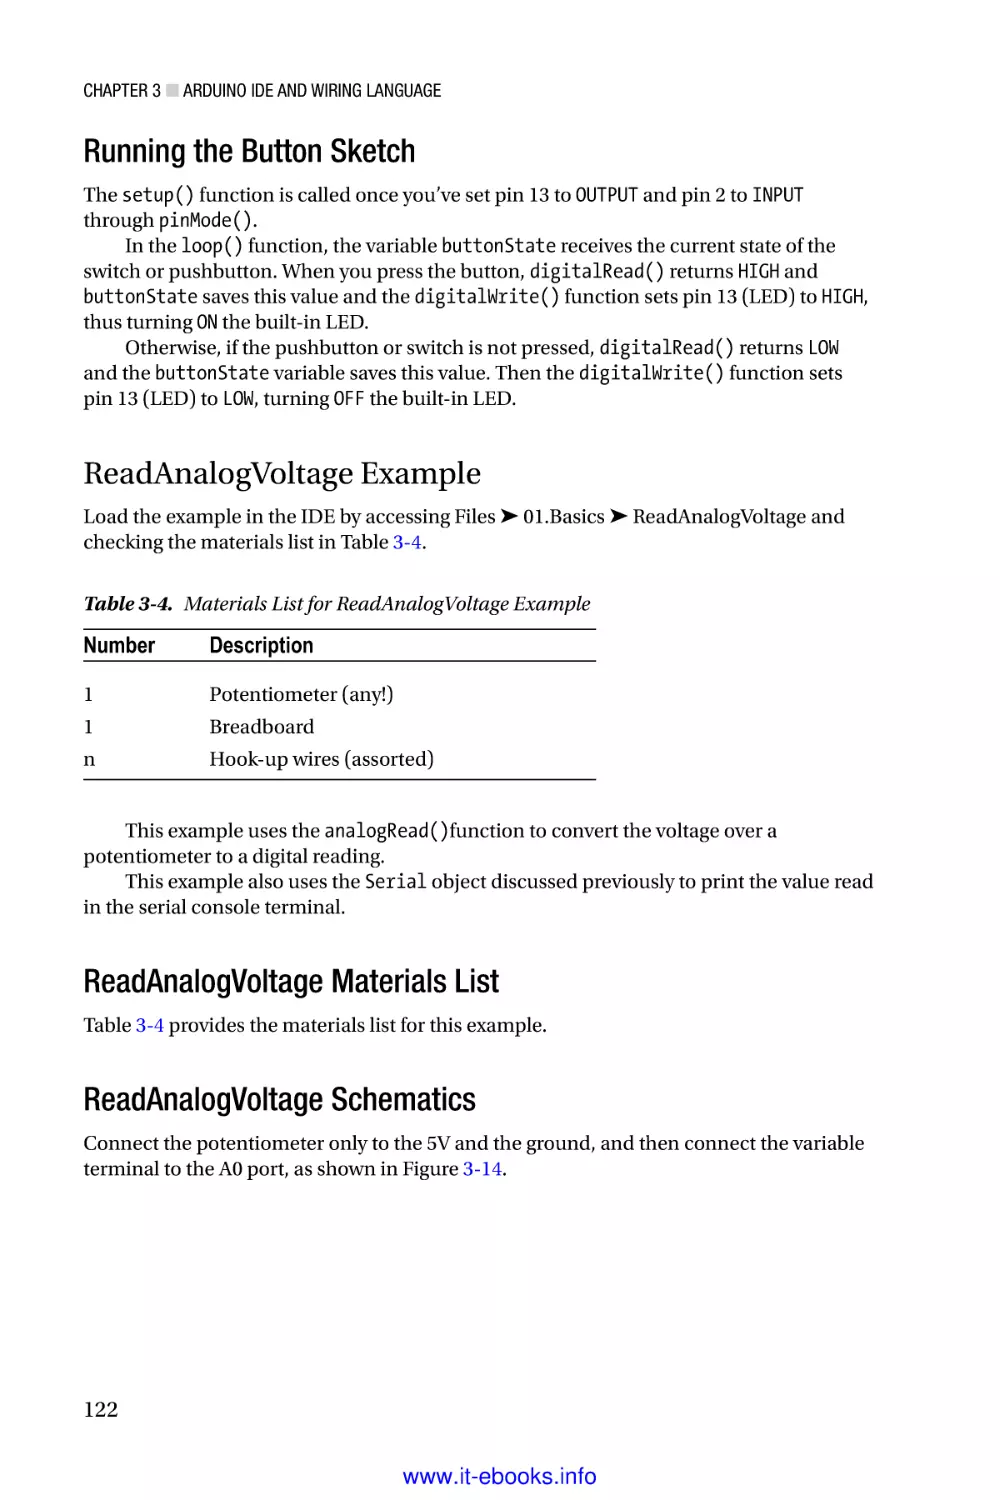 Running the Button Sketch
ReadAnalogVoltage Example
ReadAnalogVoltage Materials List
ReadAnalogVoltage Schematics